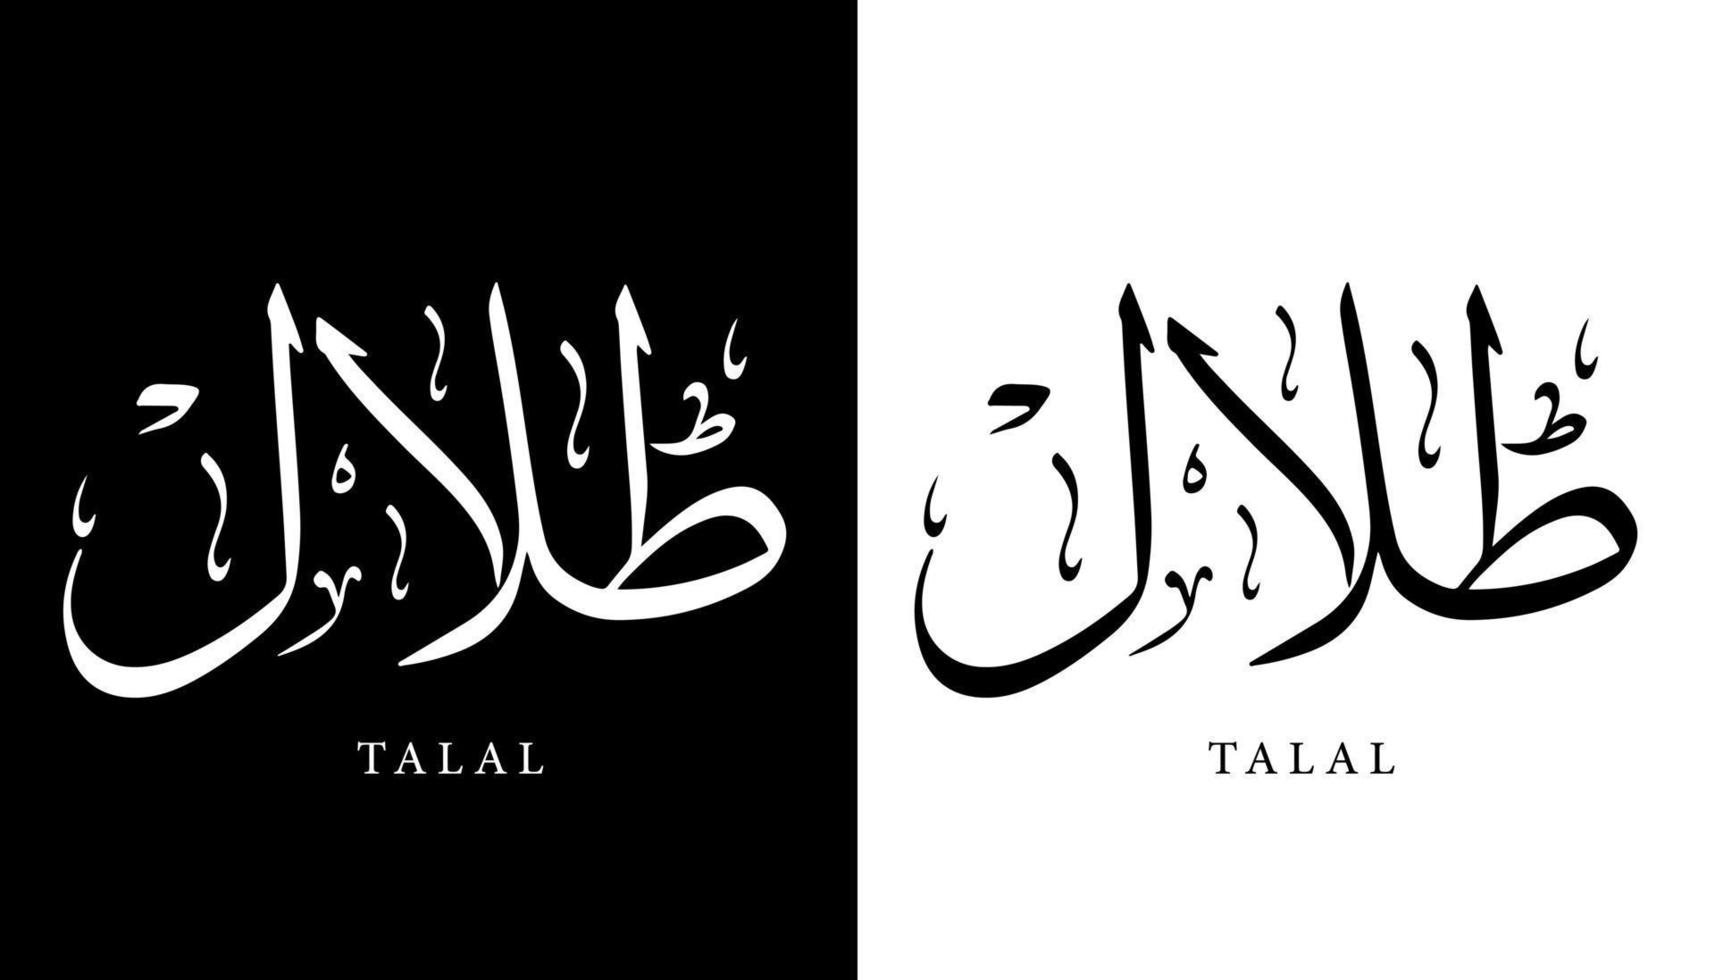 arabisk kalligrafi namn översatt "talal" arabiska bokstäver alfabet teckensnitt bokstäver islamisk logotyp vektorillustration vektor